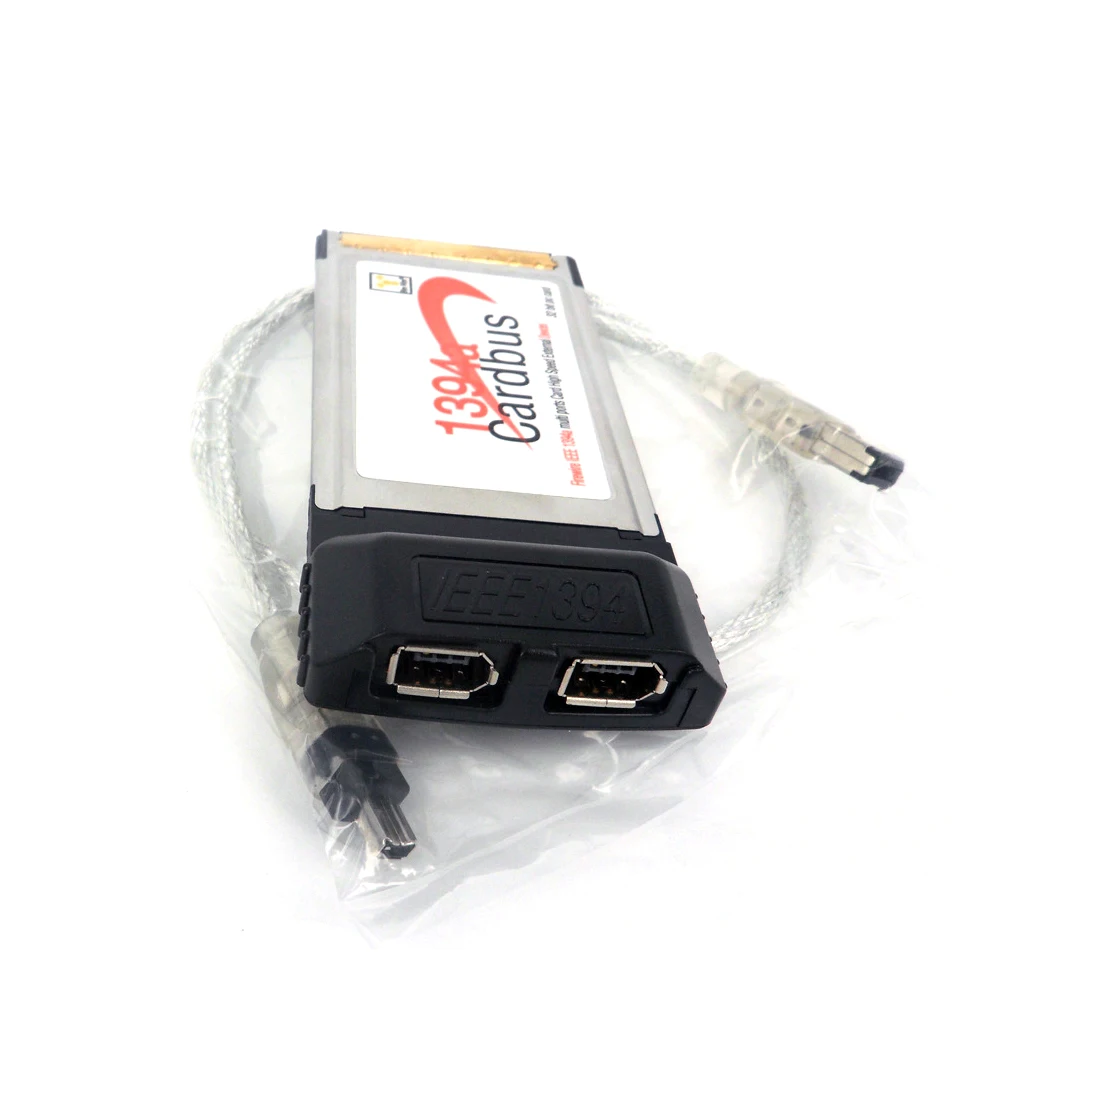 2 порта 6Pin 1394A IEEE для FireWire 1394 флеш-карта cardbus 54 мм для PCMCIA цифровой камеры DV видеокамеры жесткие диски ноутбук ПК